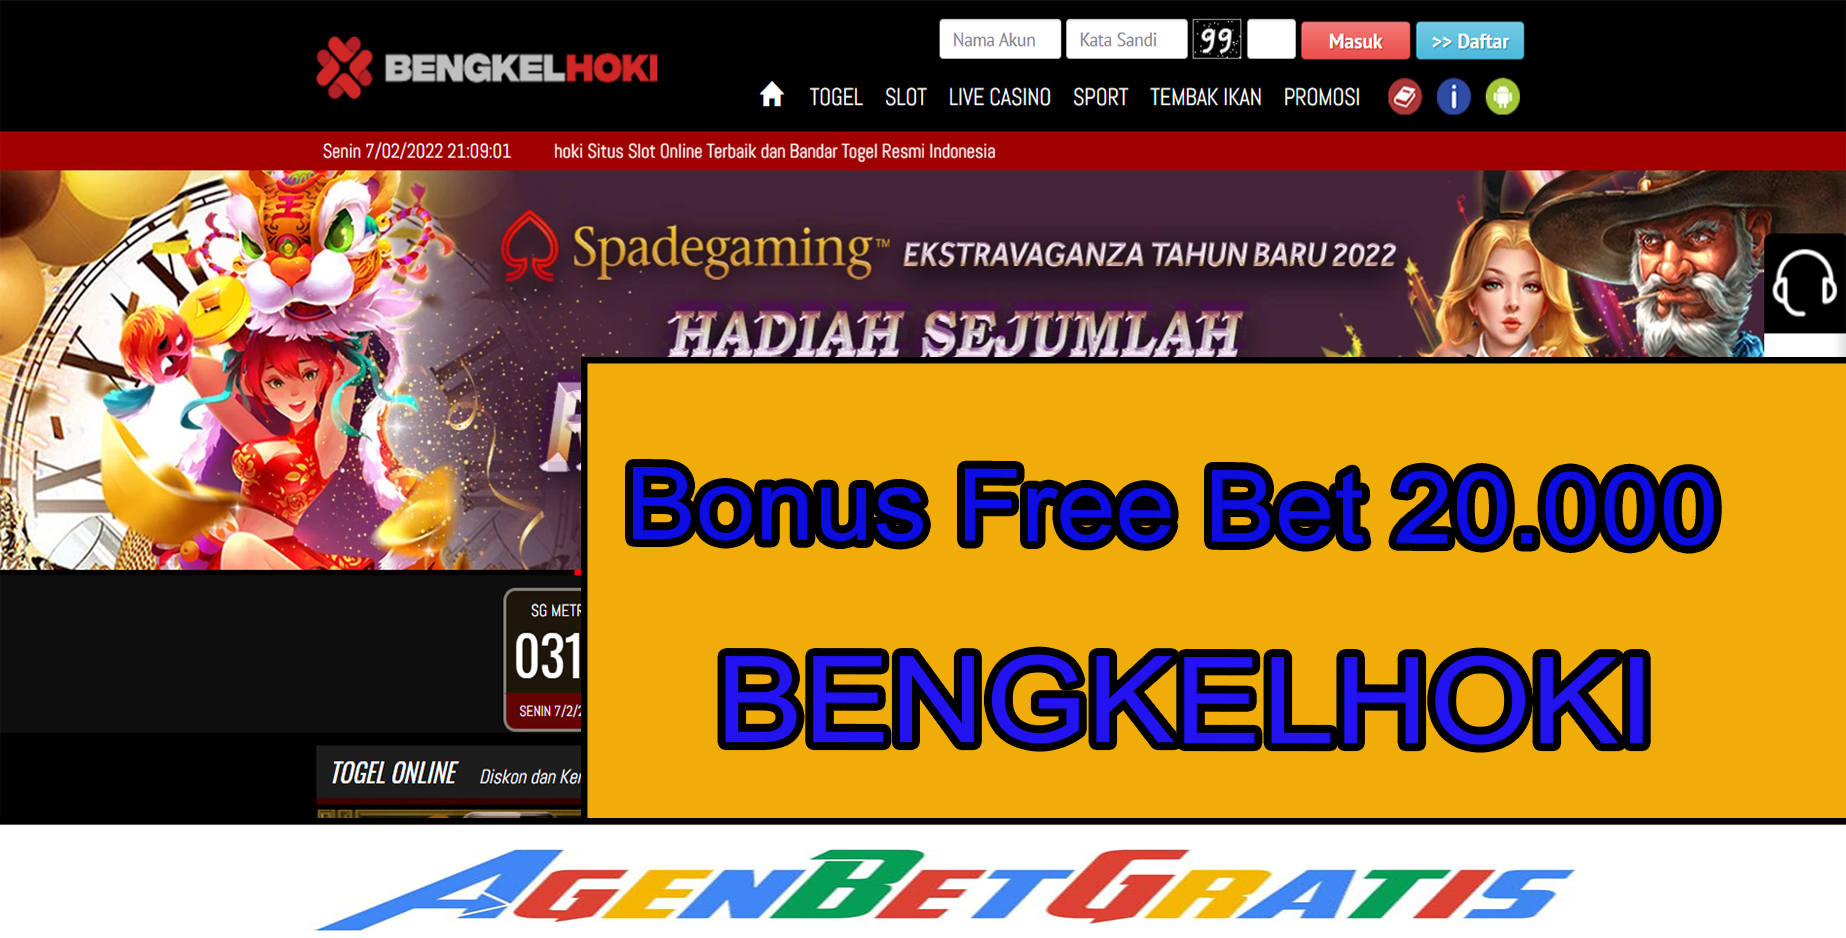 BENGKELHOKI- Bonus FreeBet 20.000